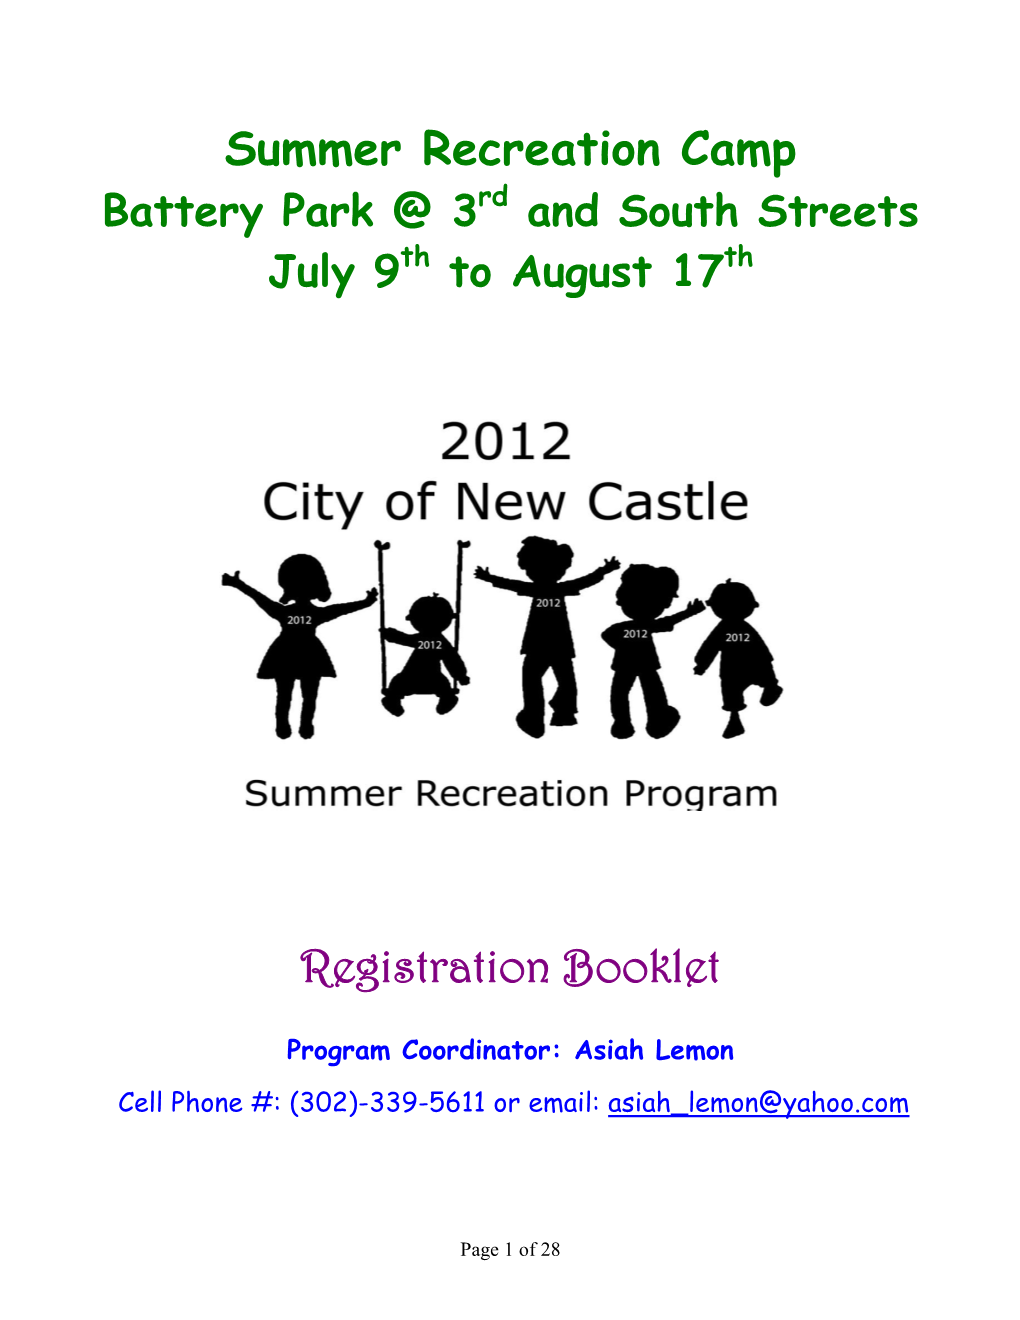 Summer Recreation Camp Registration Booklet